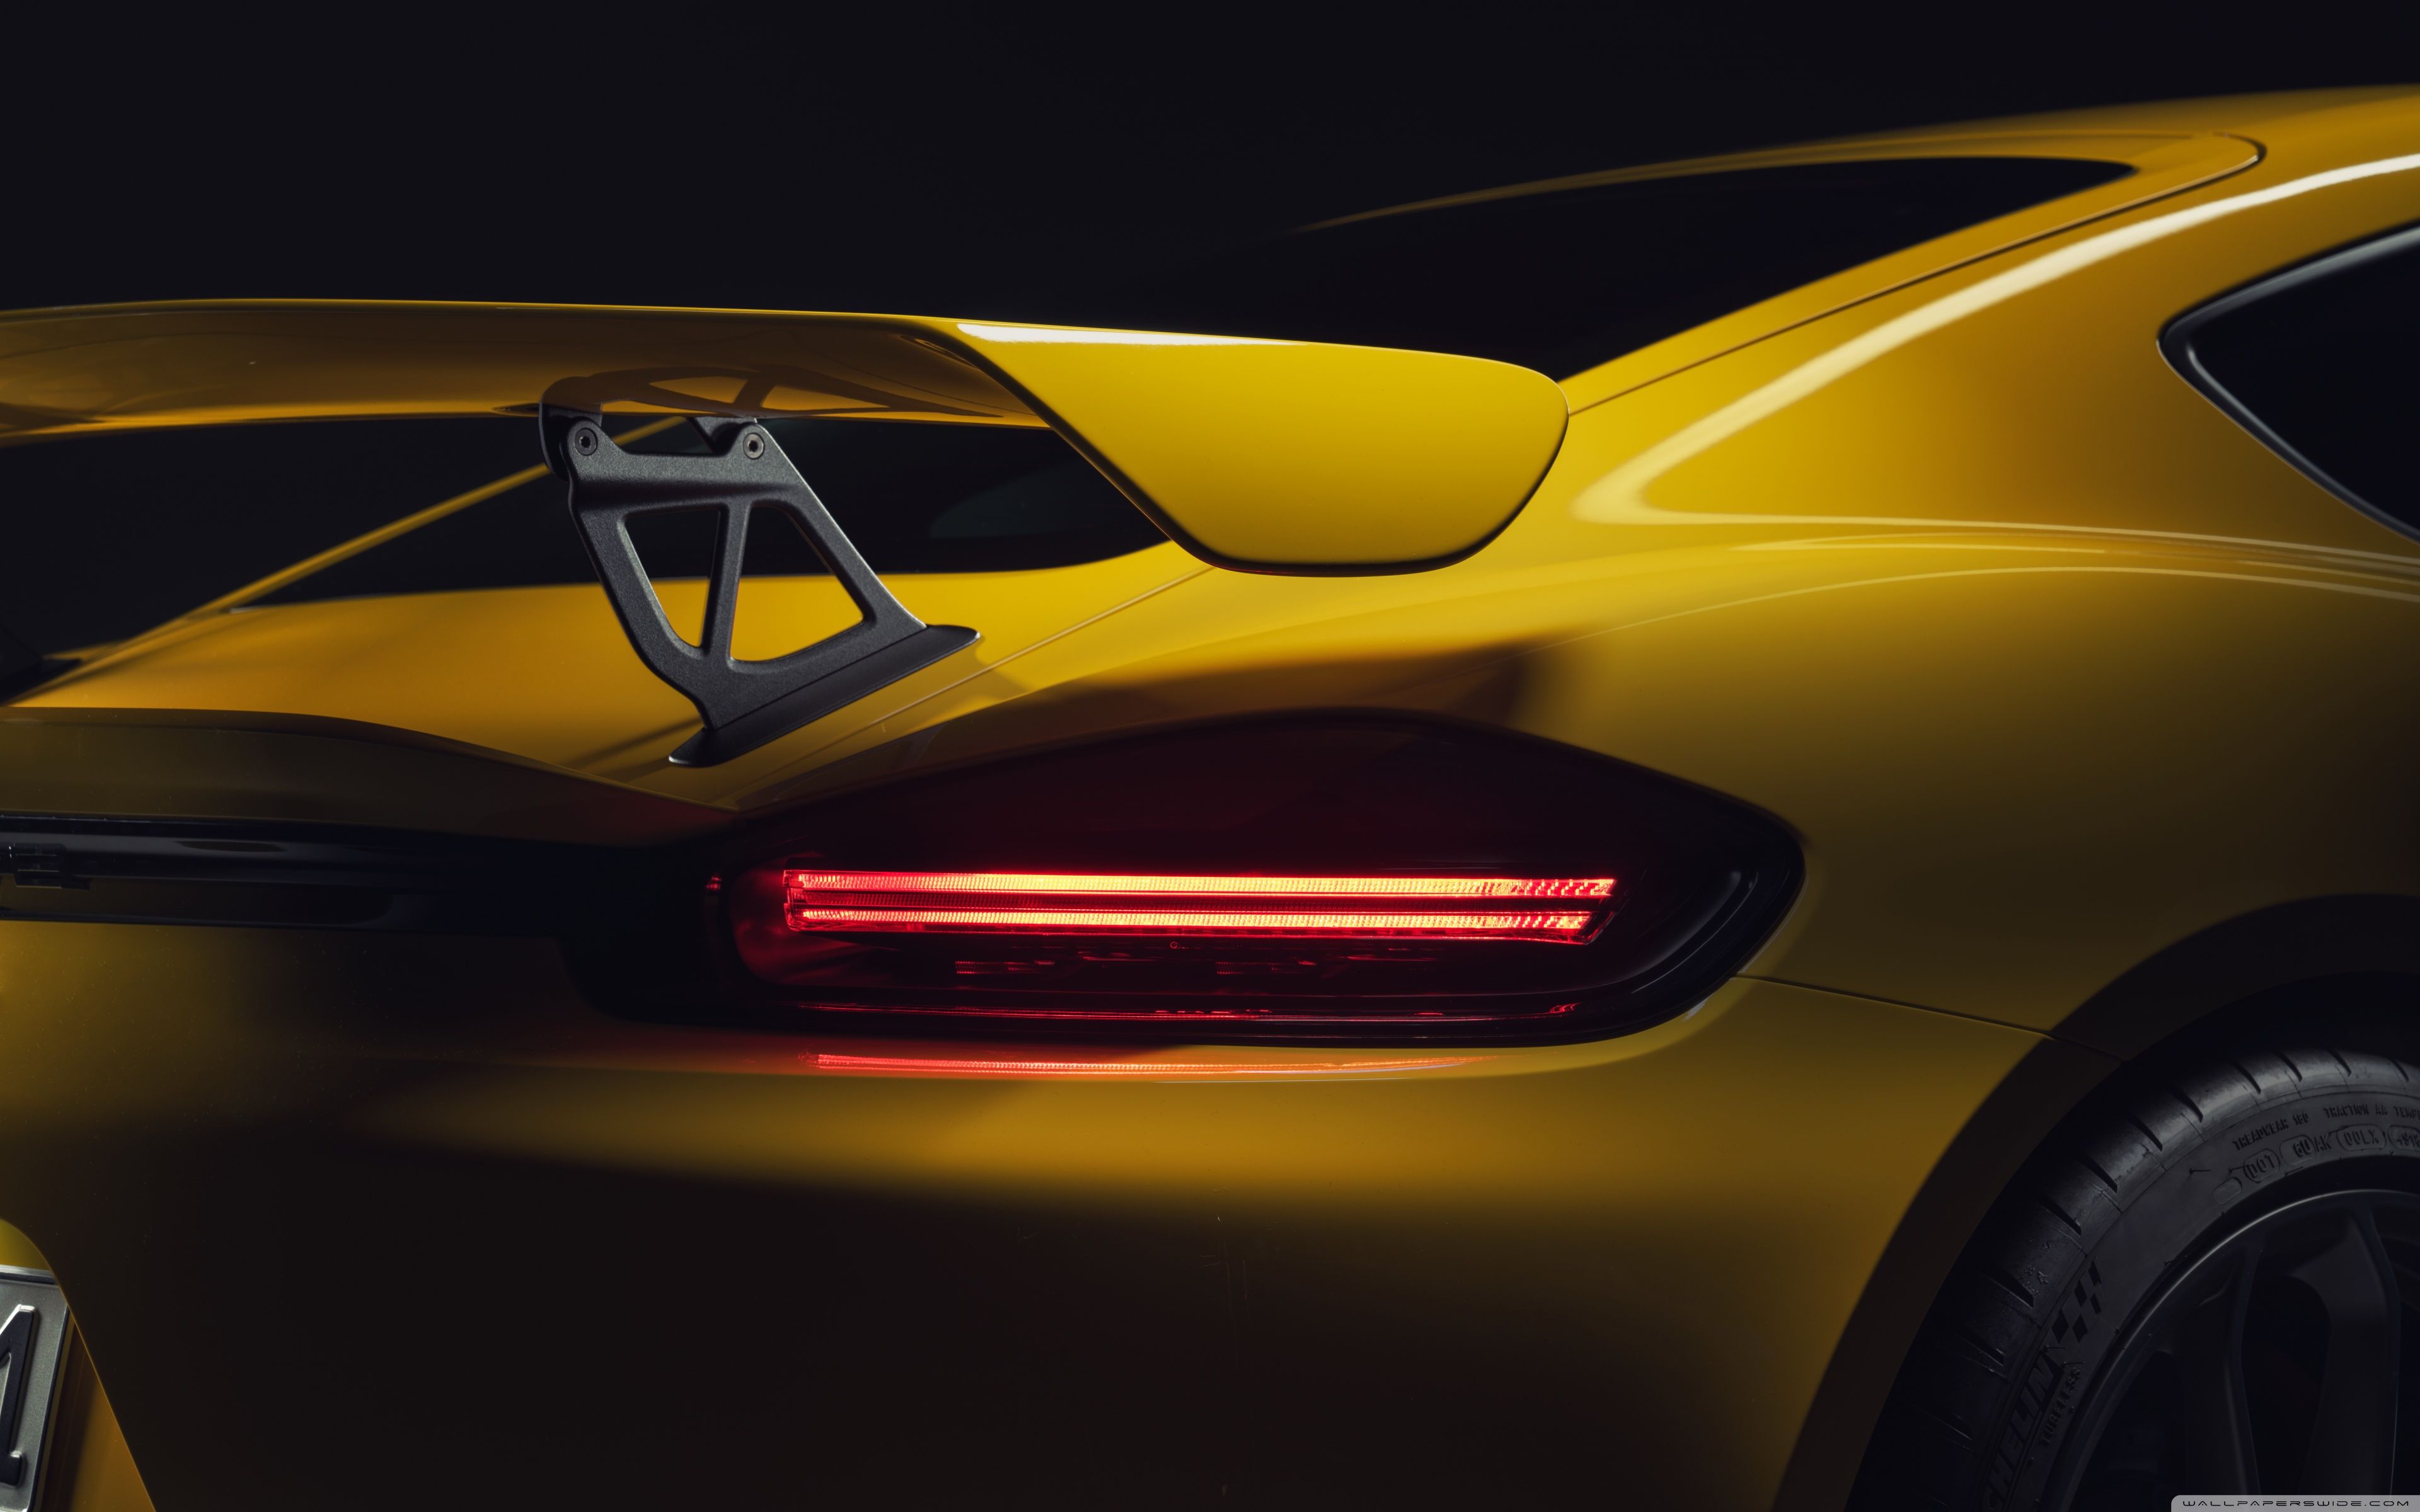 Download 2019 Yellow Porsche 718 Cayman GT4 Sports Car. UltraHD